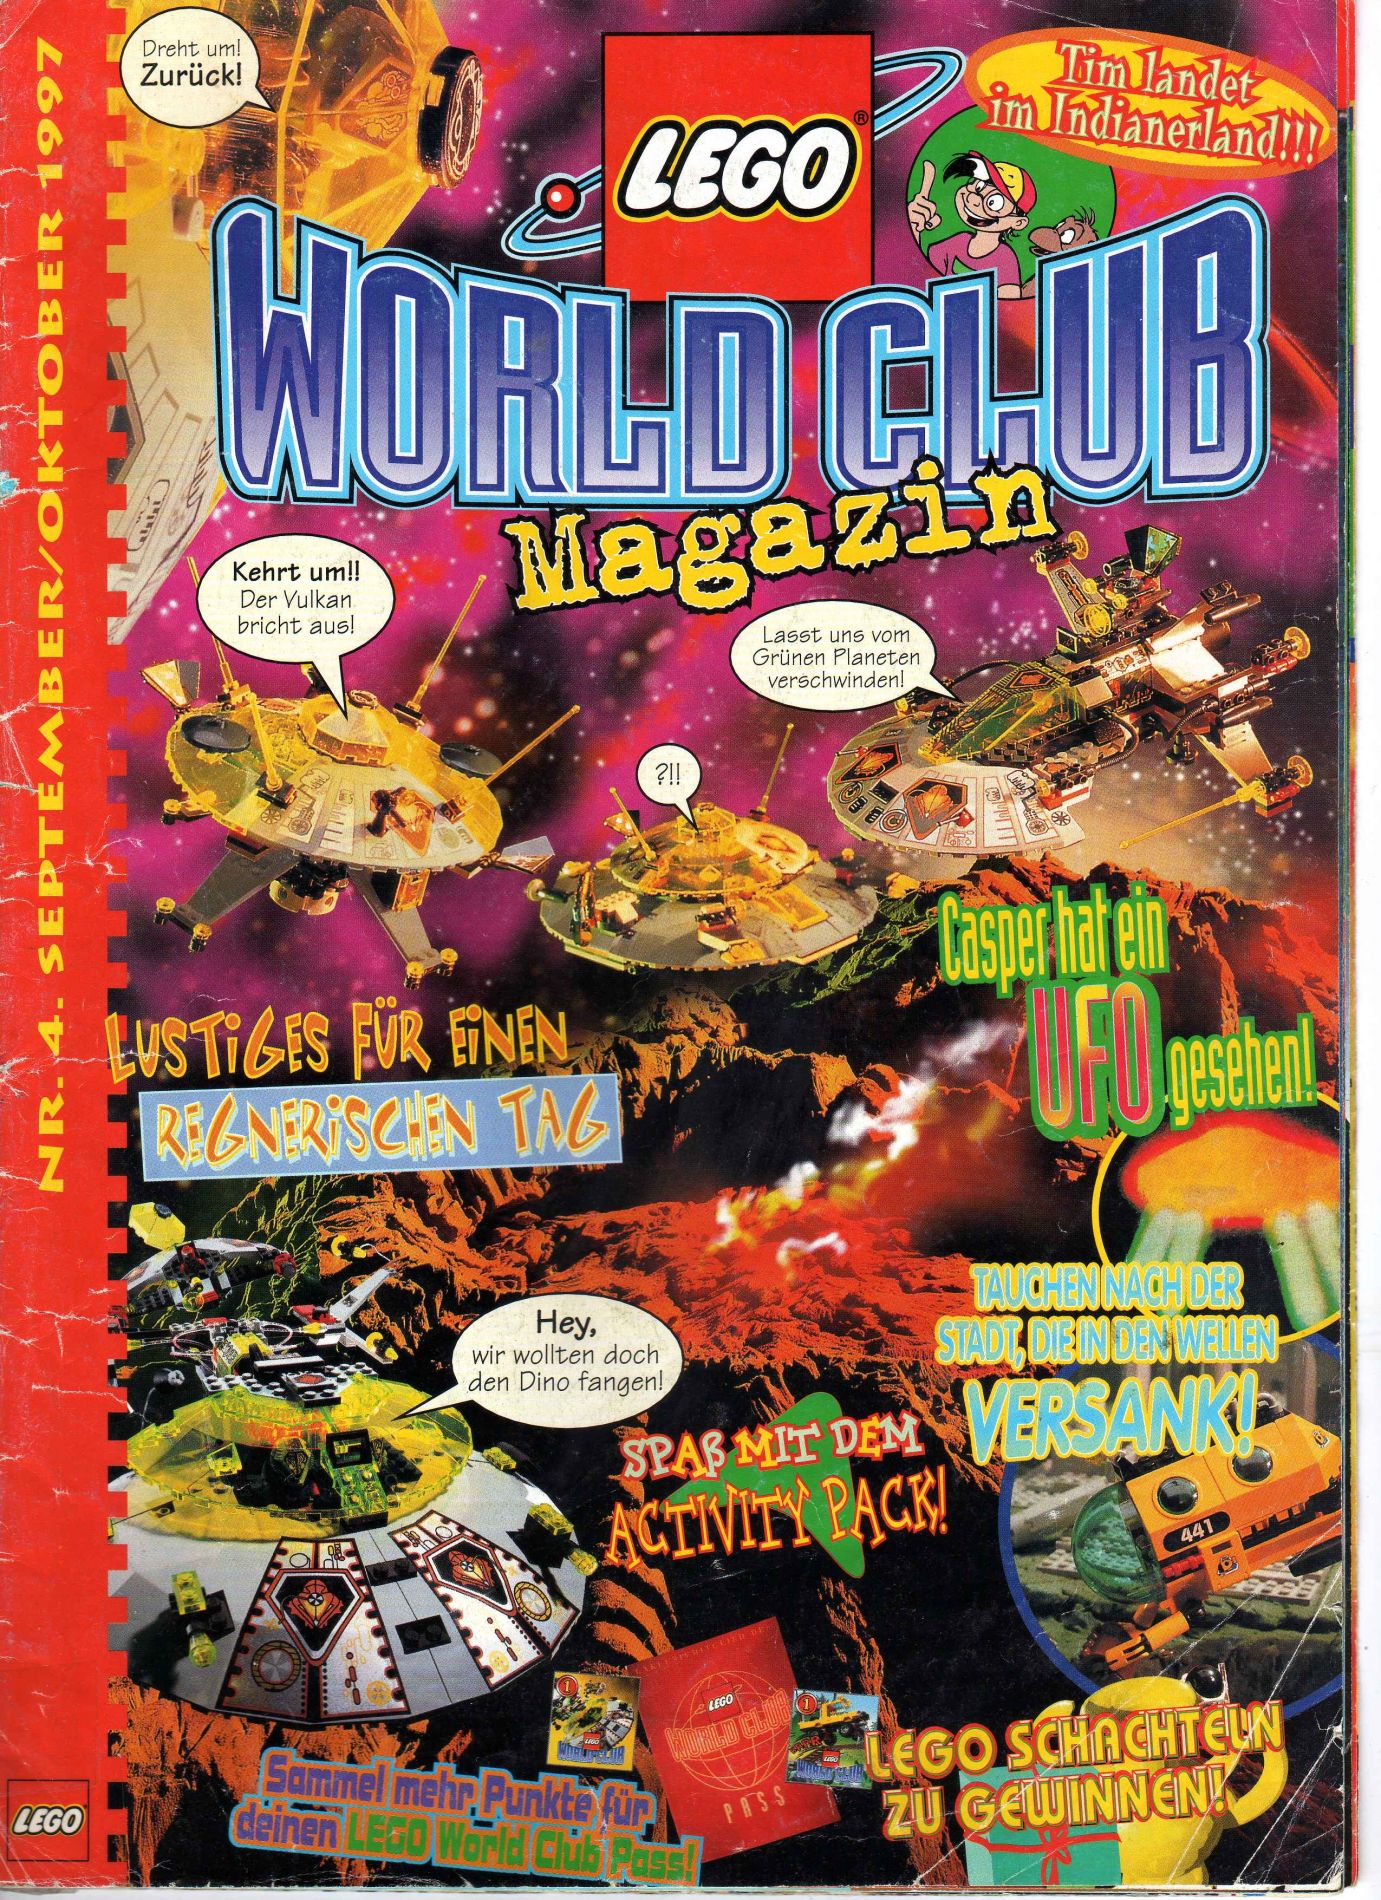 LEGO World Club 1997 Issue 4